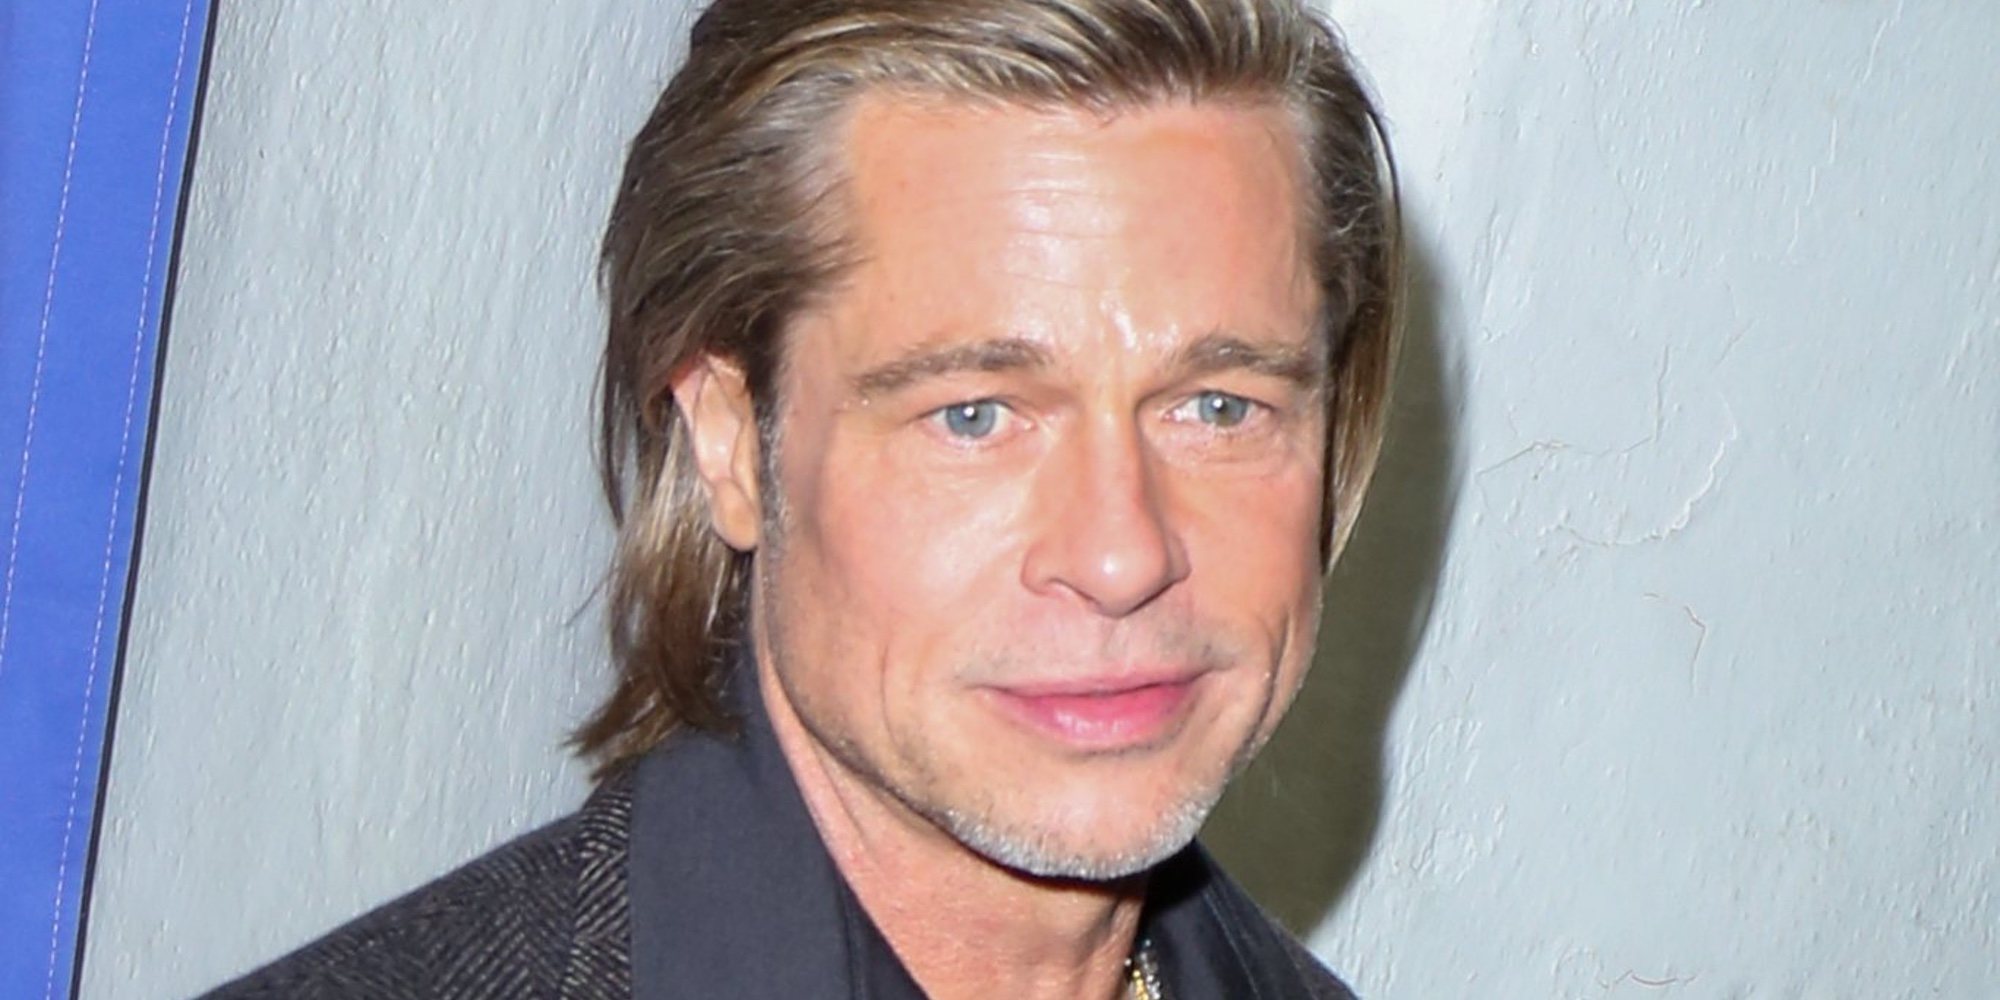 Brad Pitt, pillado con una misteriosa mujer en un concierto